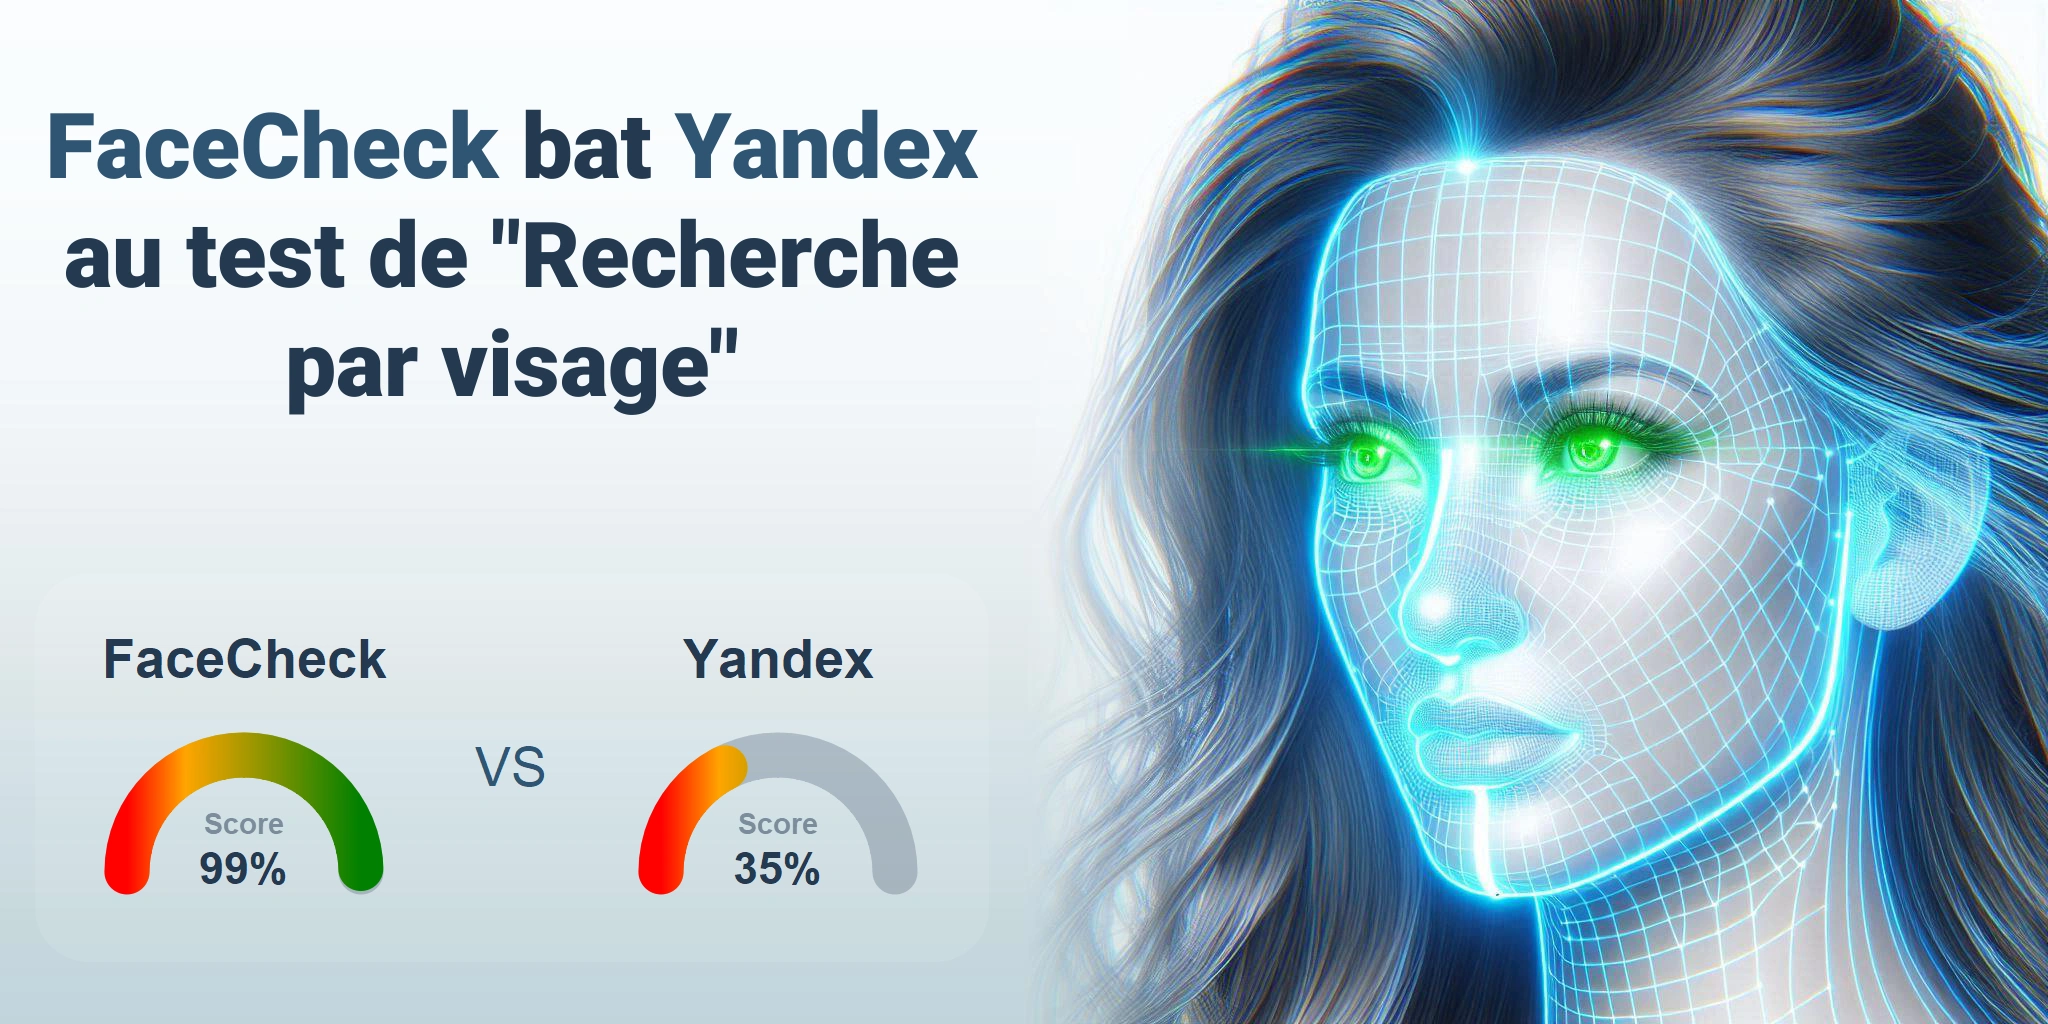 FaceCheck.ID vs Yandex.com